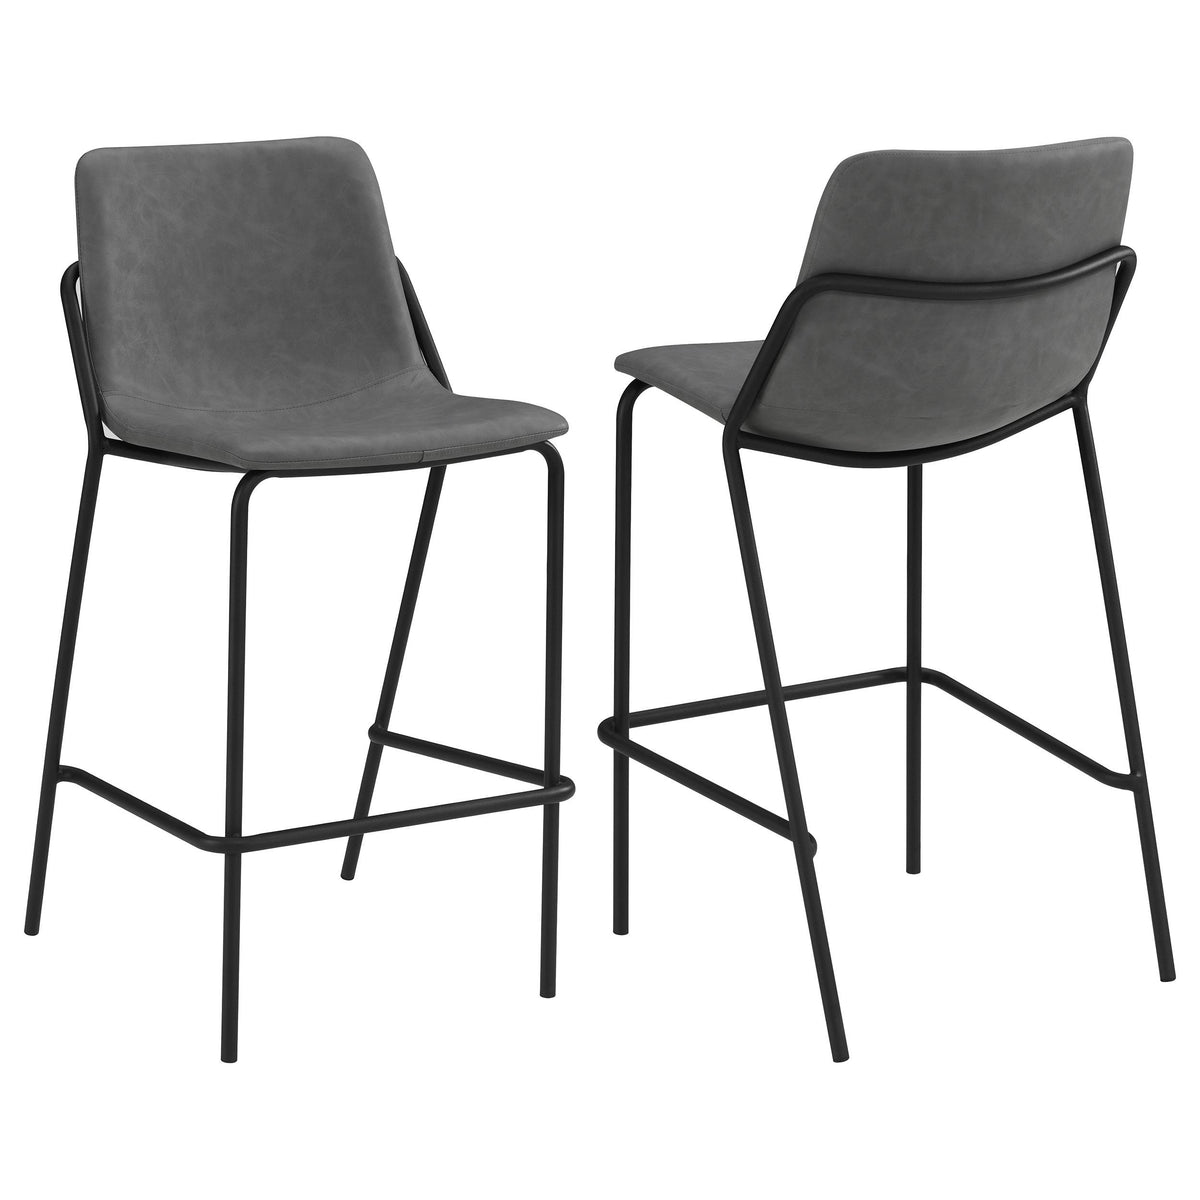 Earnest Solid Back Upholstered Bar Stools Grey and Black (Set of 2)  Half Price Furniture